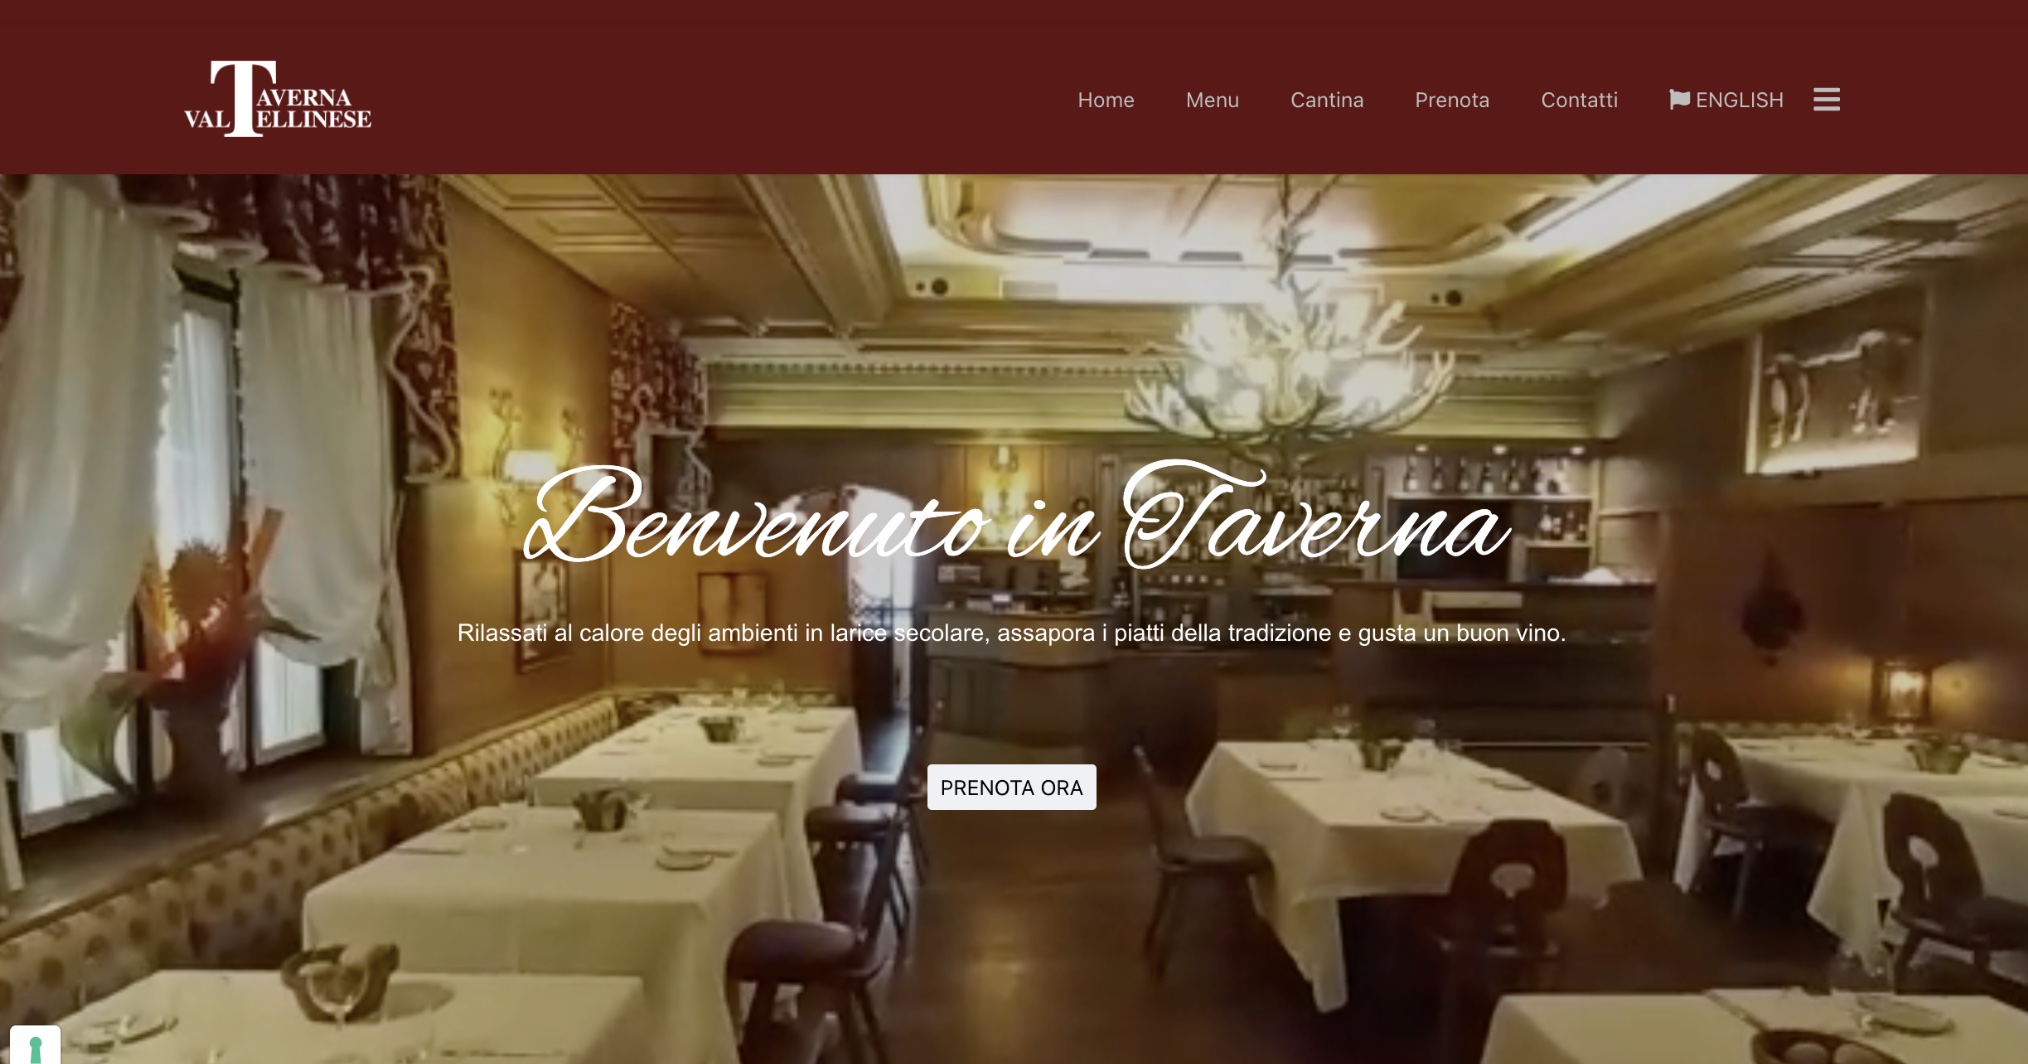 Taverna Valtellinese Website